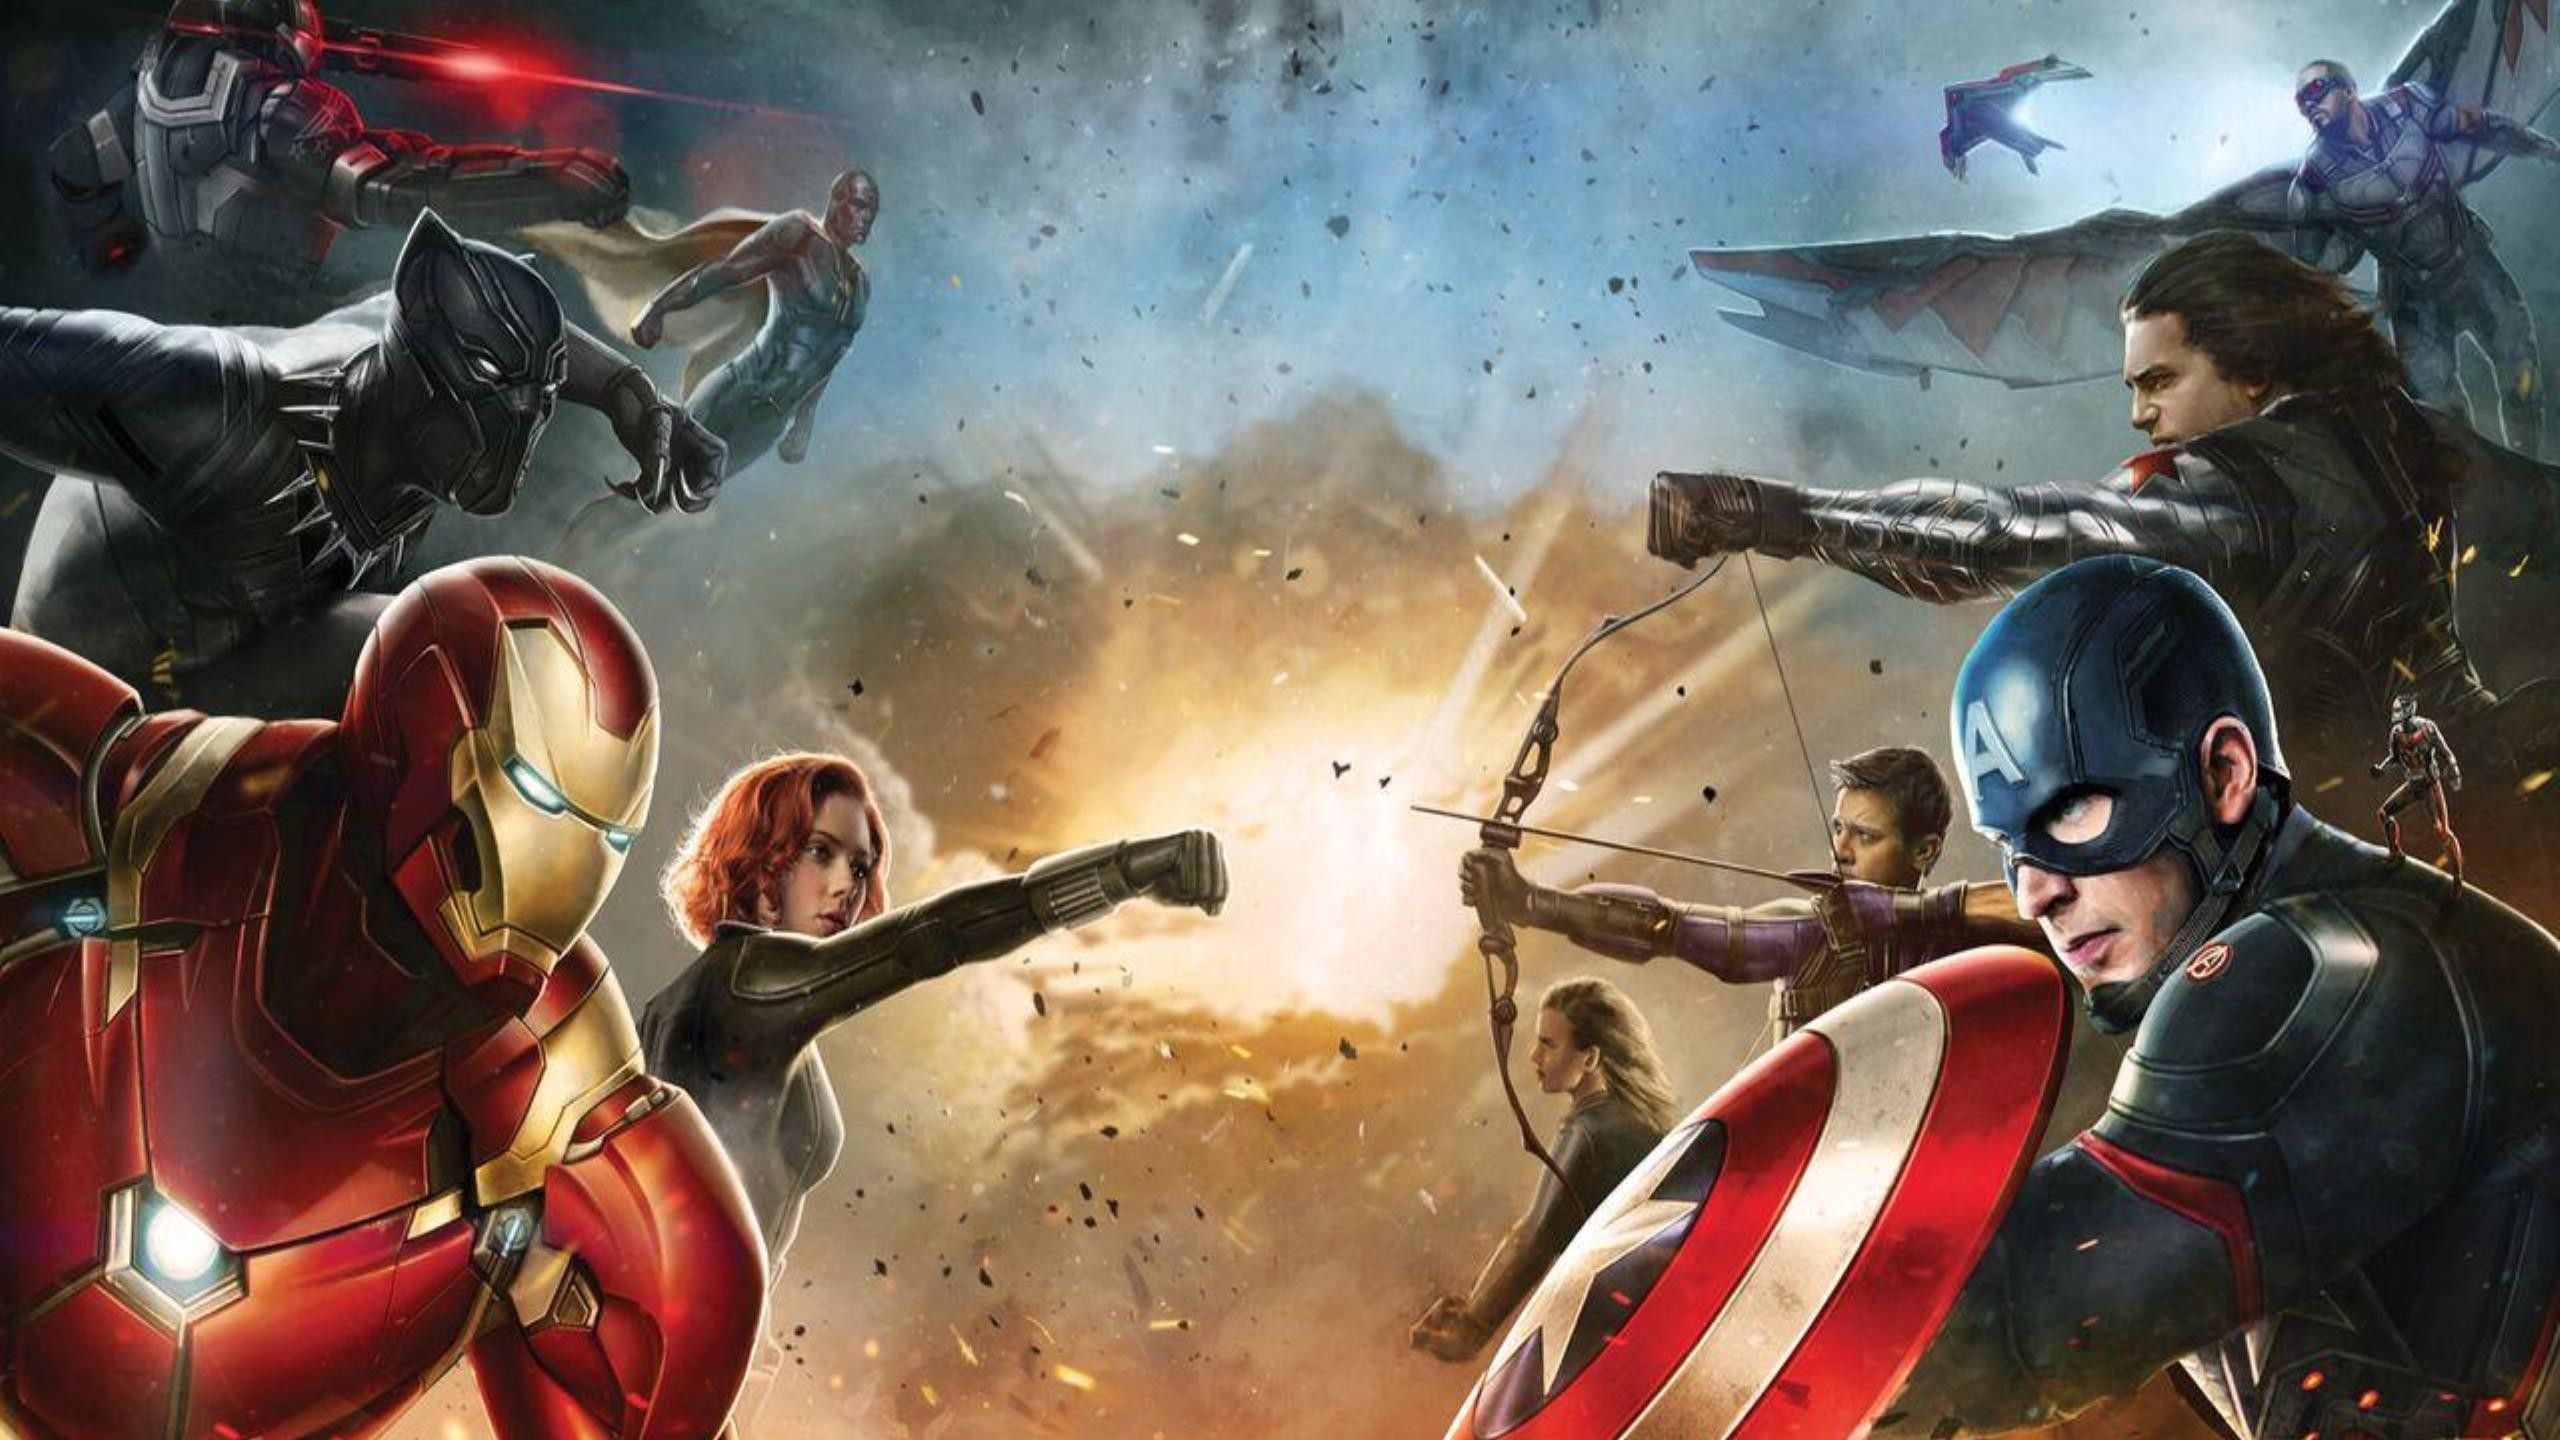 Captain America Civil War Wallpaper Full HD. Civil war movies